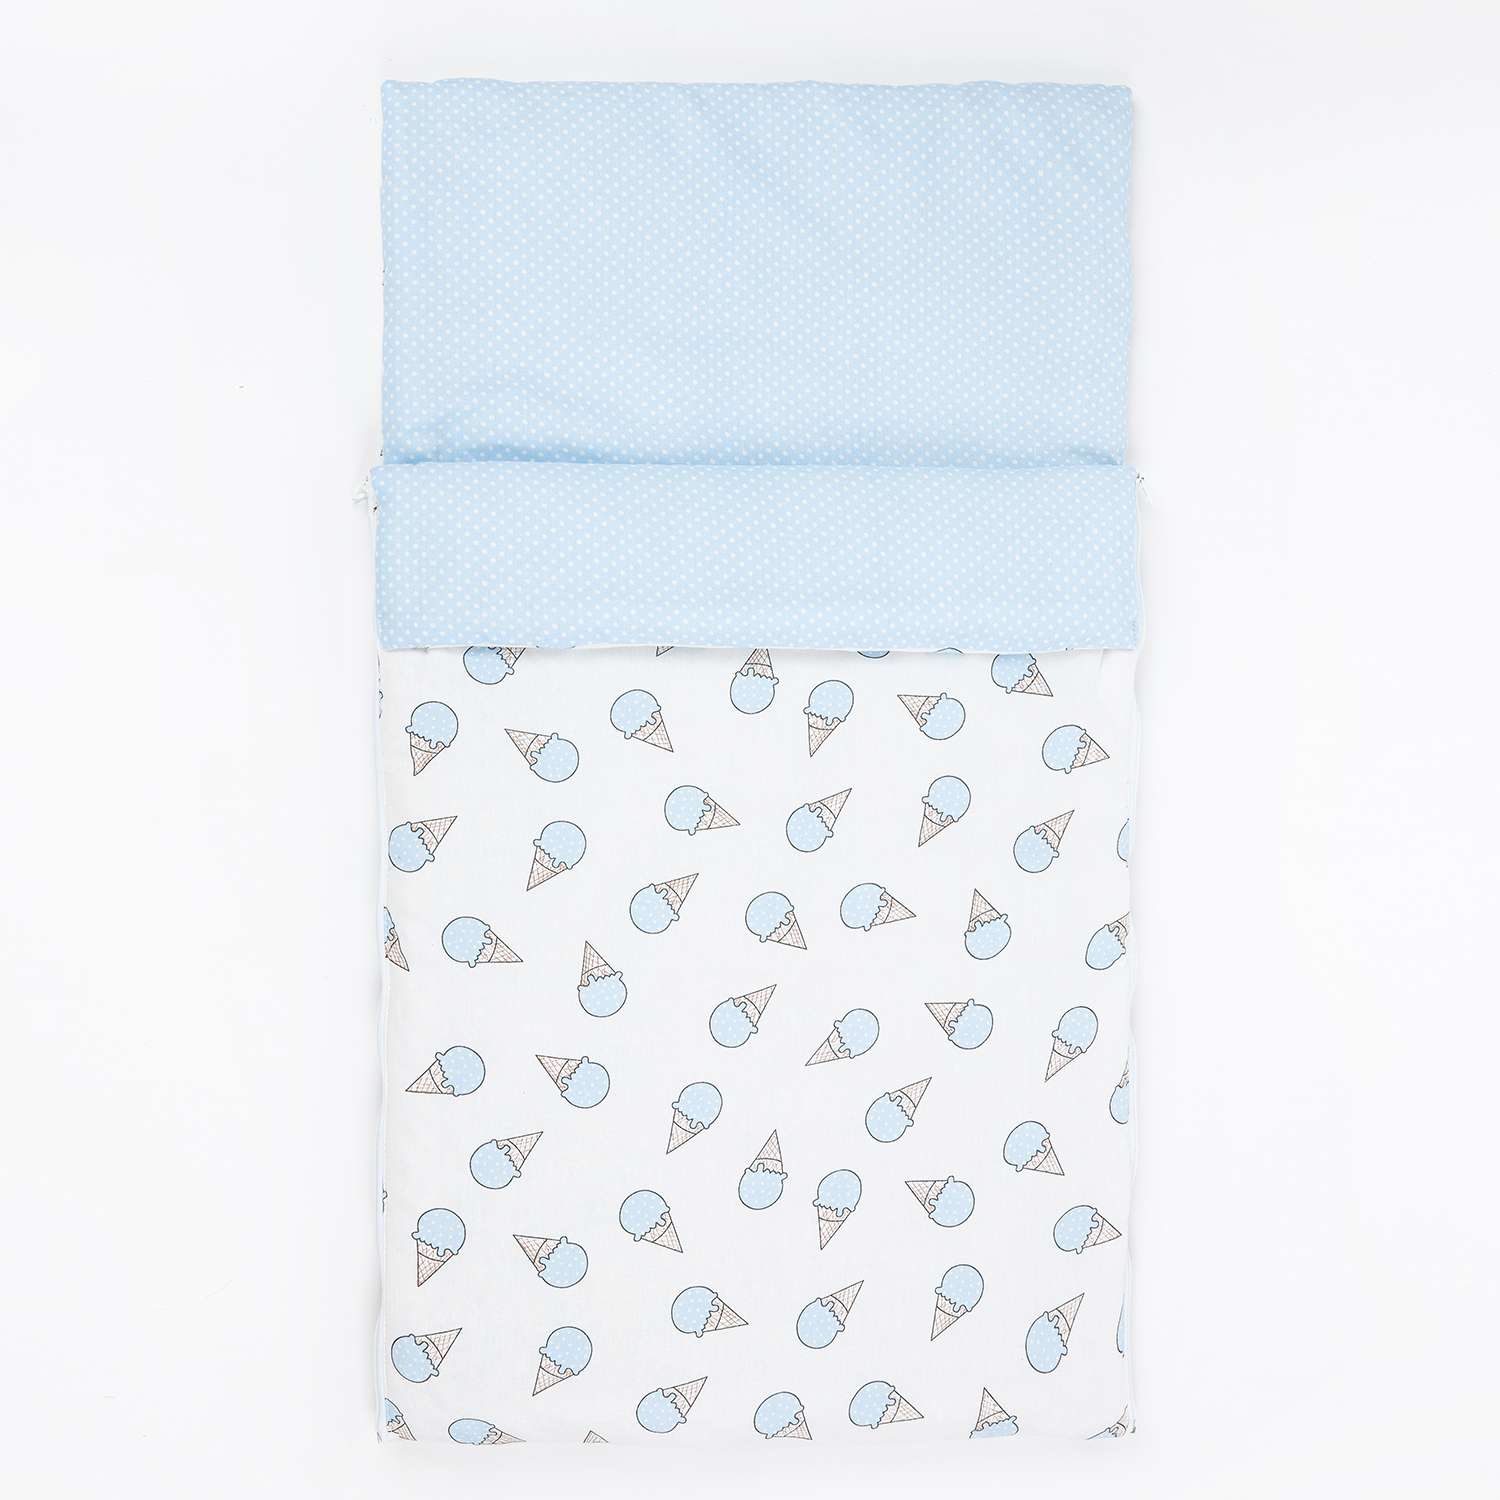 Спальный мешок Чудо-чадо Сплюшик мороженое голубой - фото 4